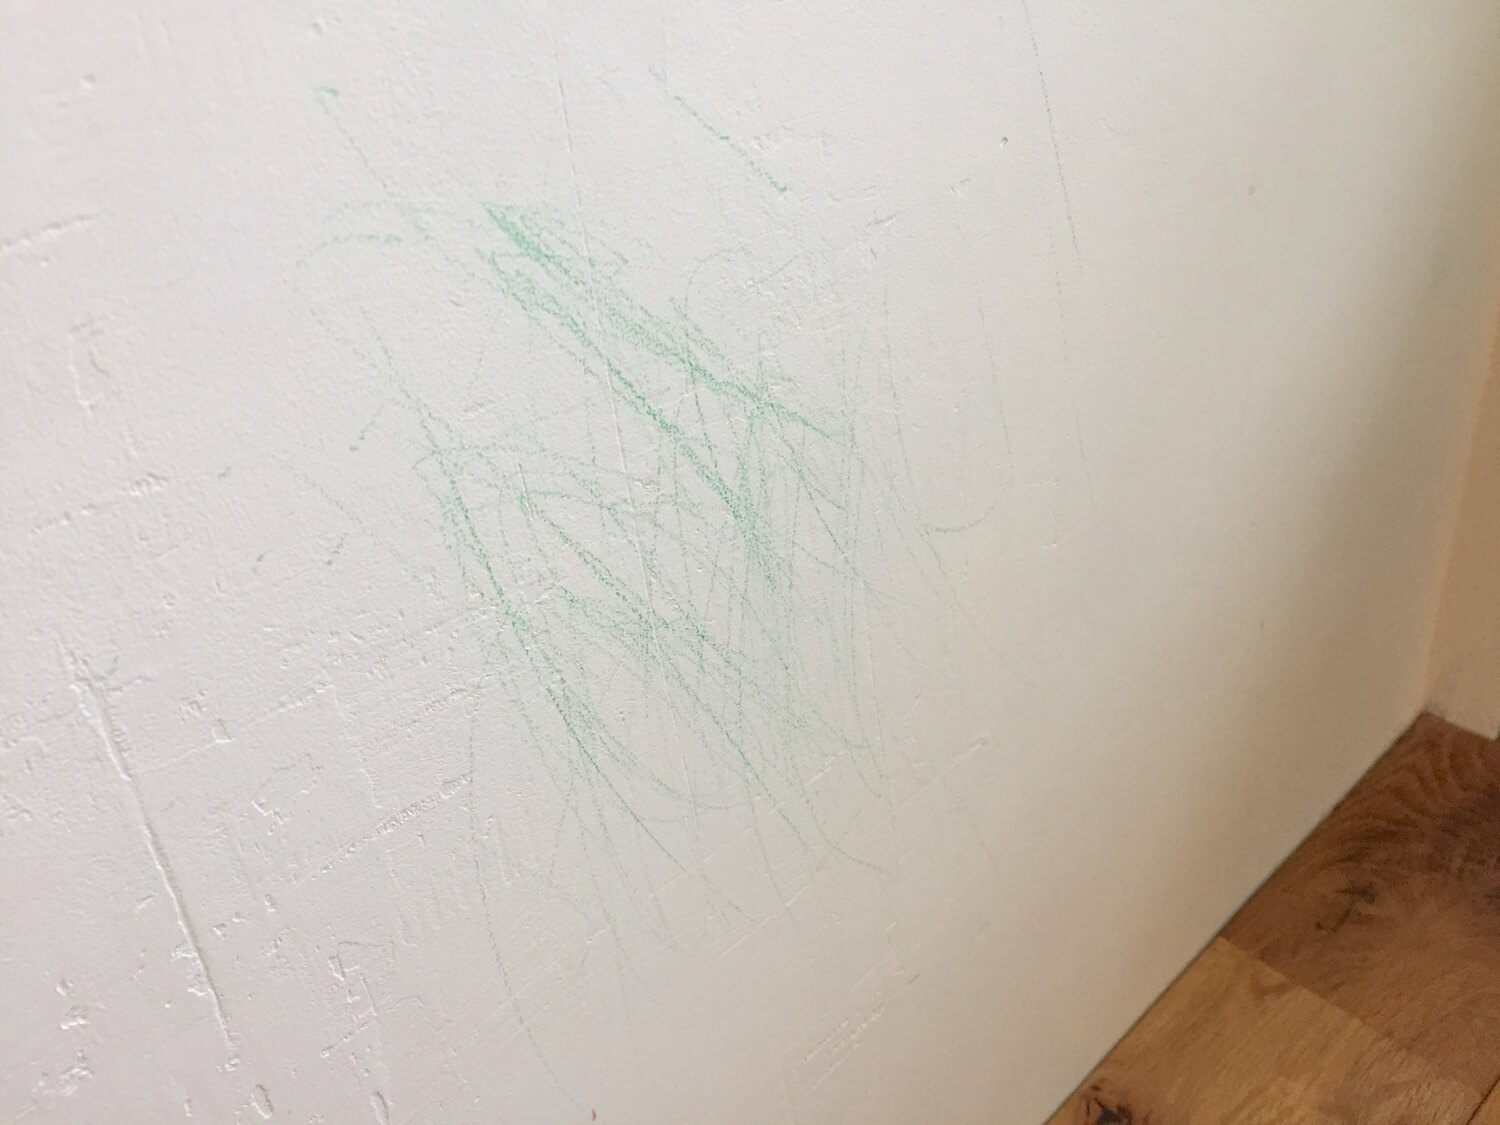 壁が汚れてもペンキ塗装仕上げならdiyで簡単補修 子供がクレヨンで